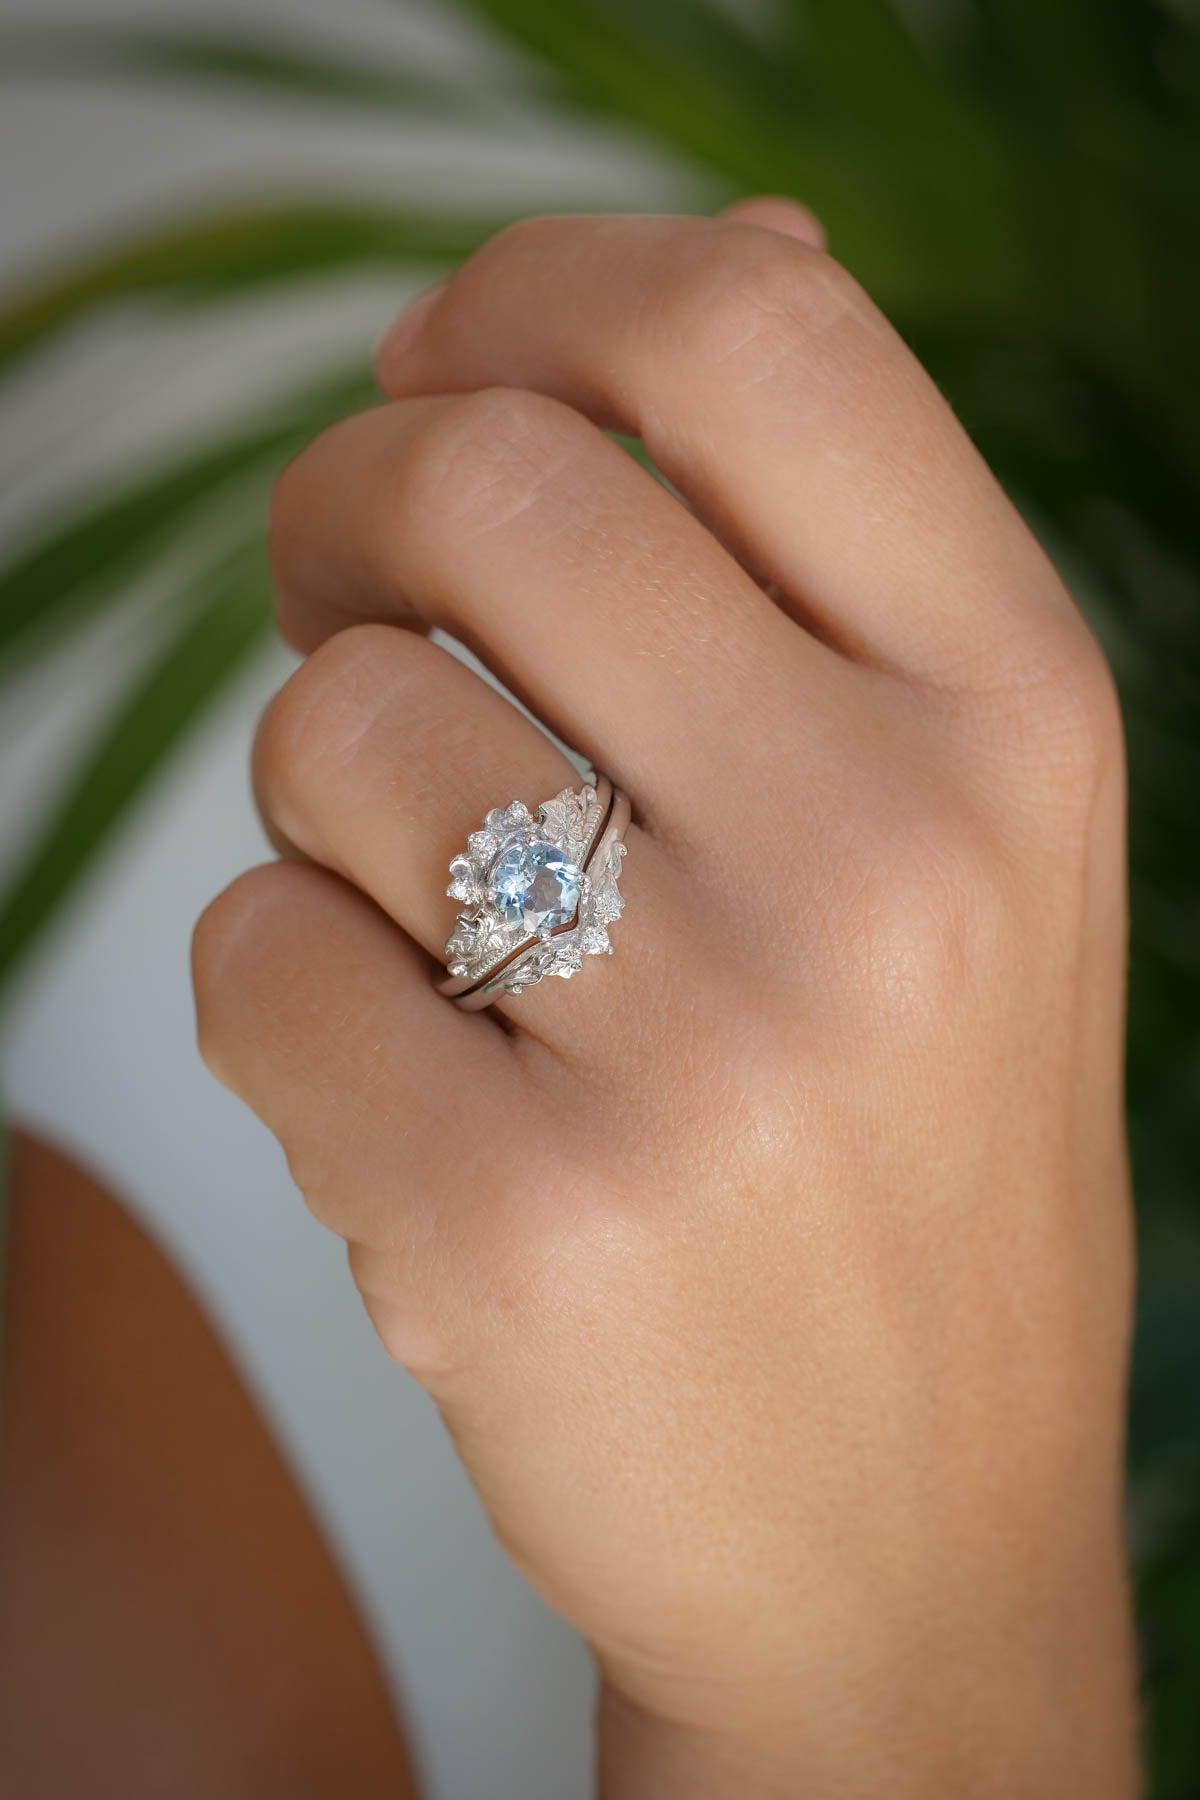 1 Carat Aquamarine Engagement Ring Set, Tiara Shape Gold Ring with Diamonds / Ariadne